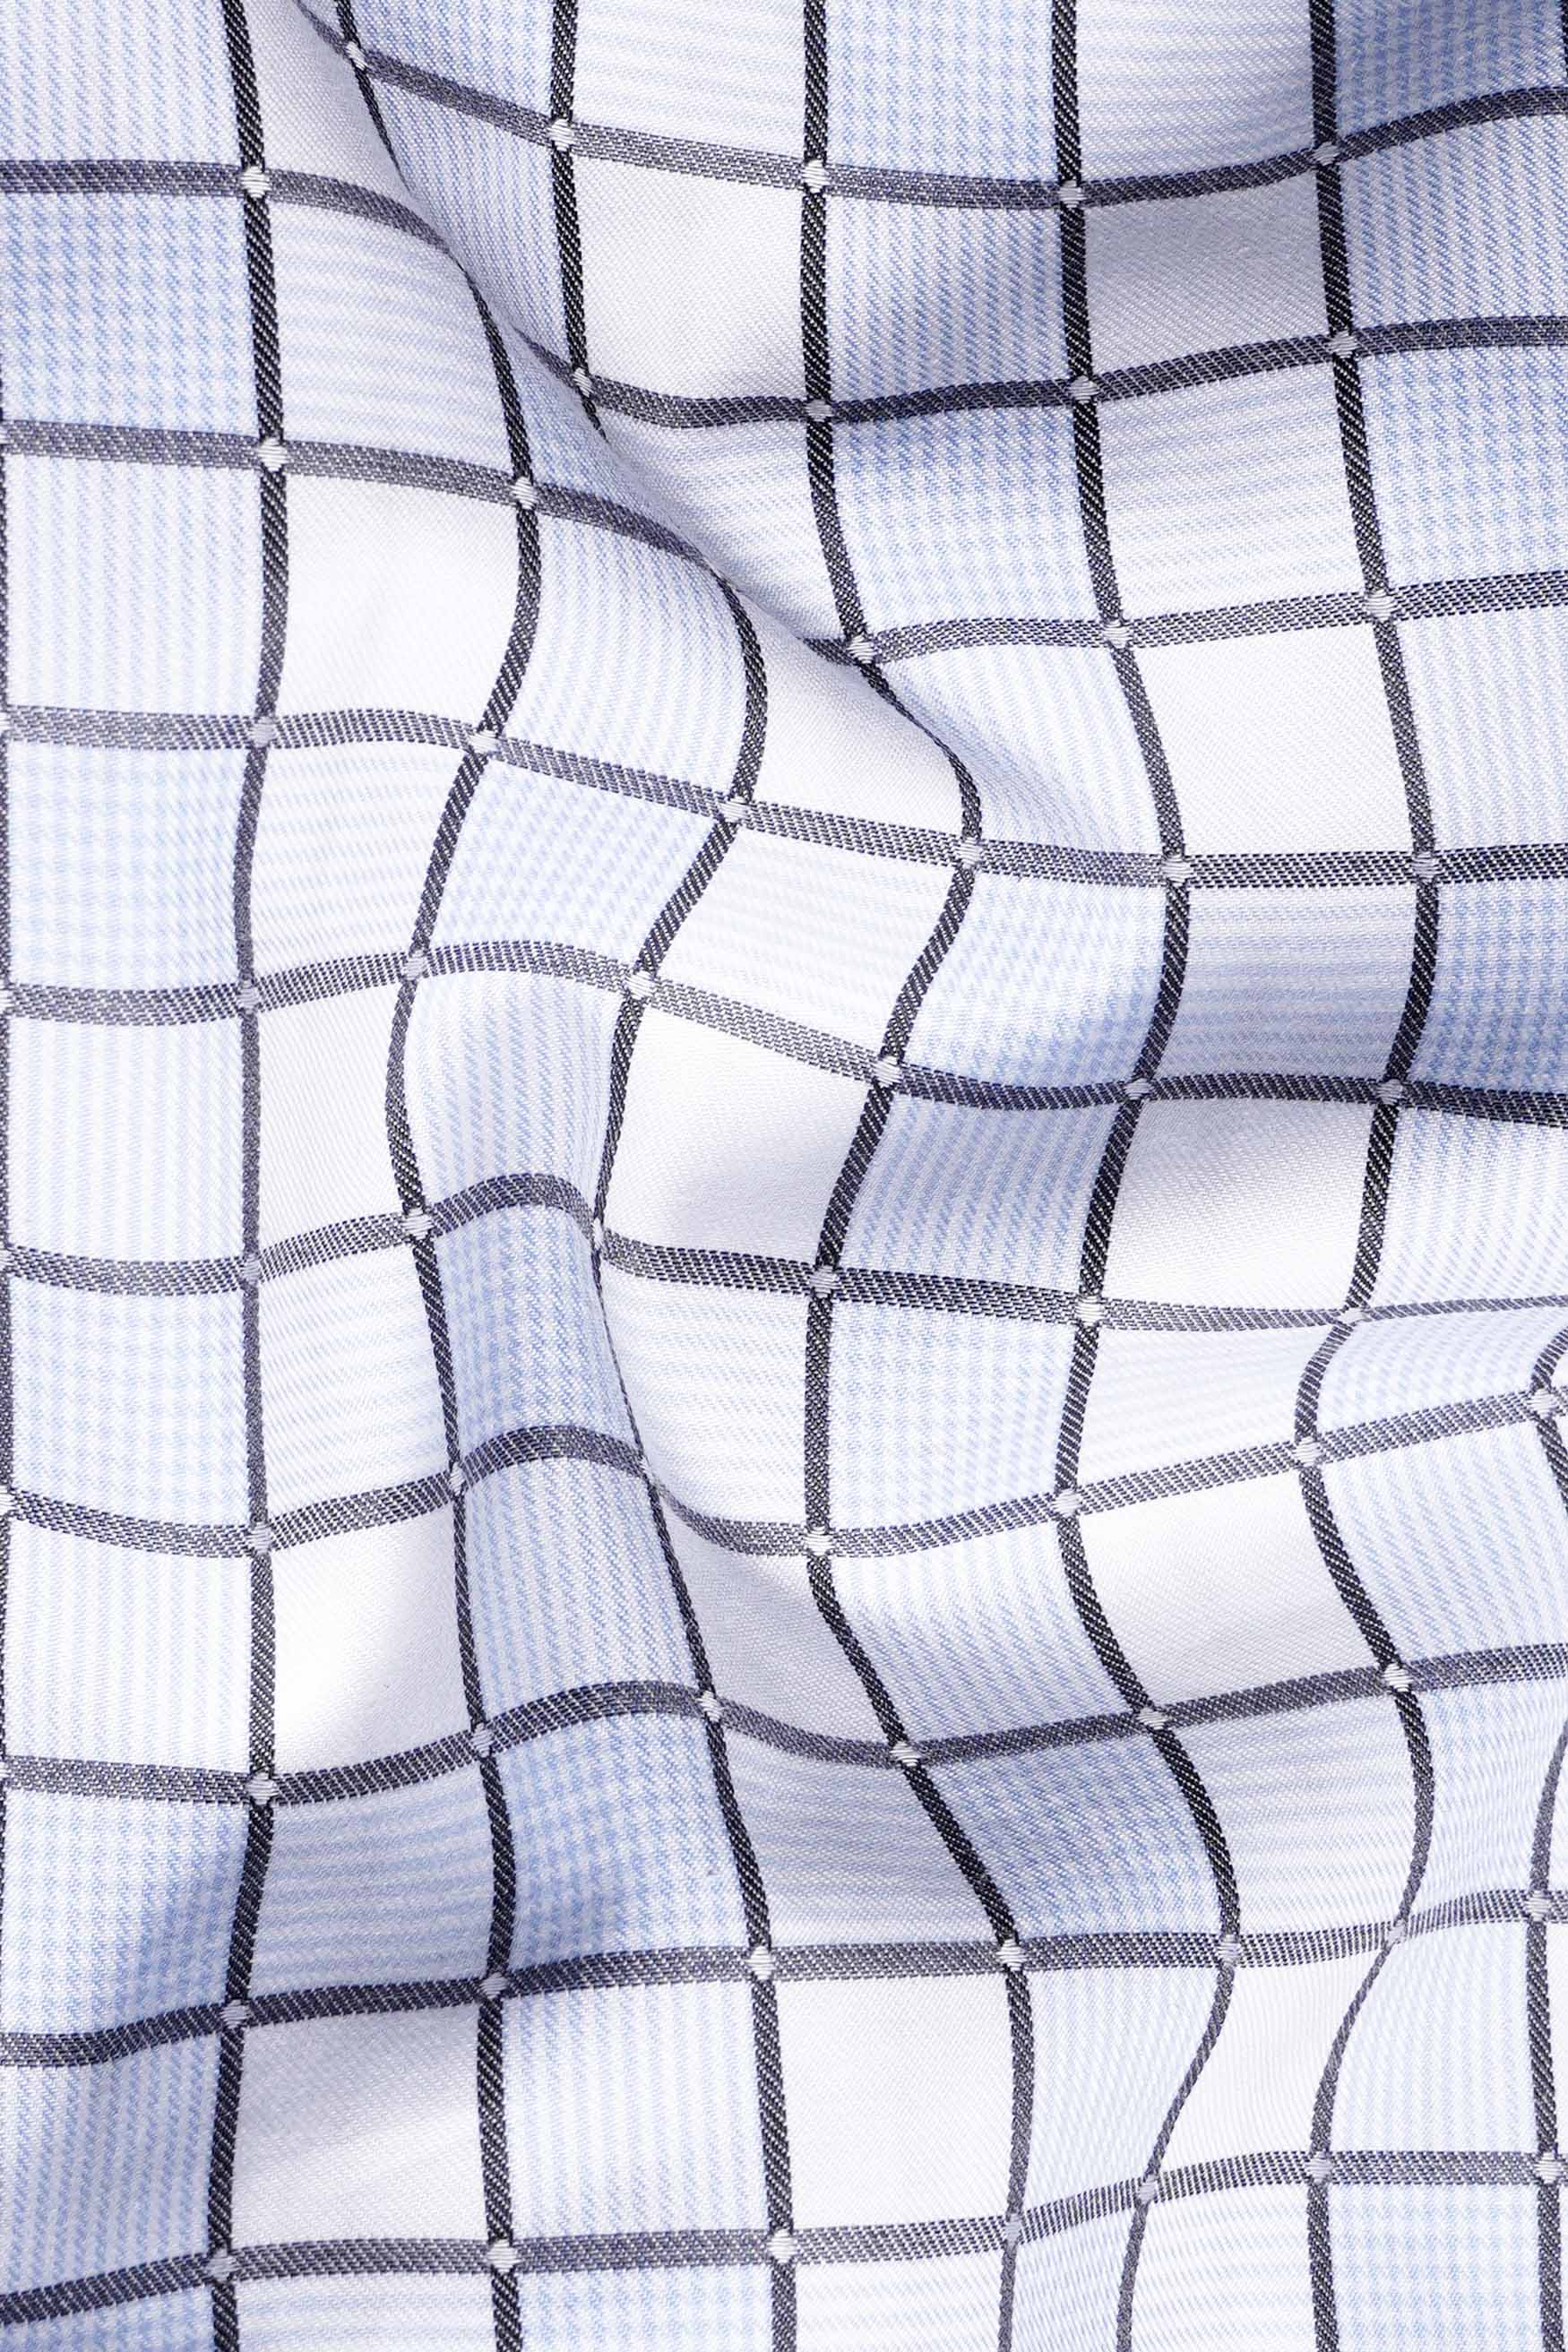 Casper Blue and White Checkered Dobby Textured Premium Giza Cotton Shirt